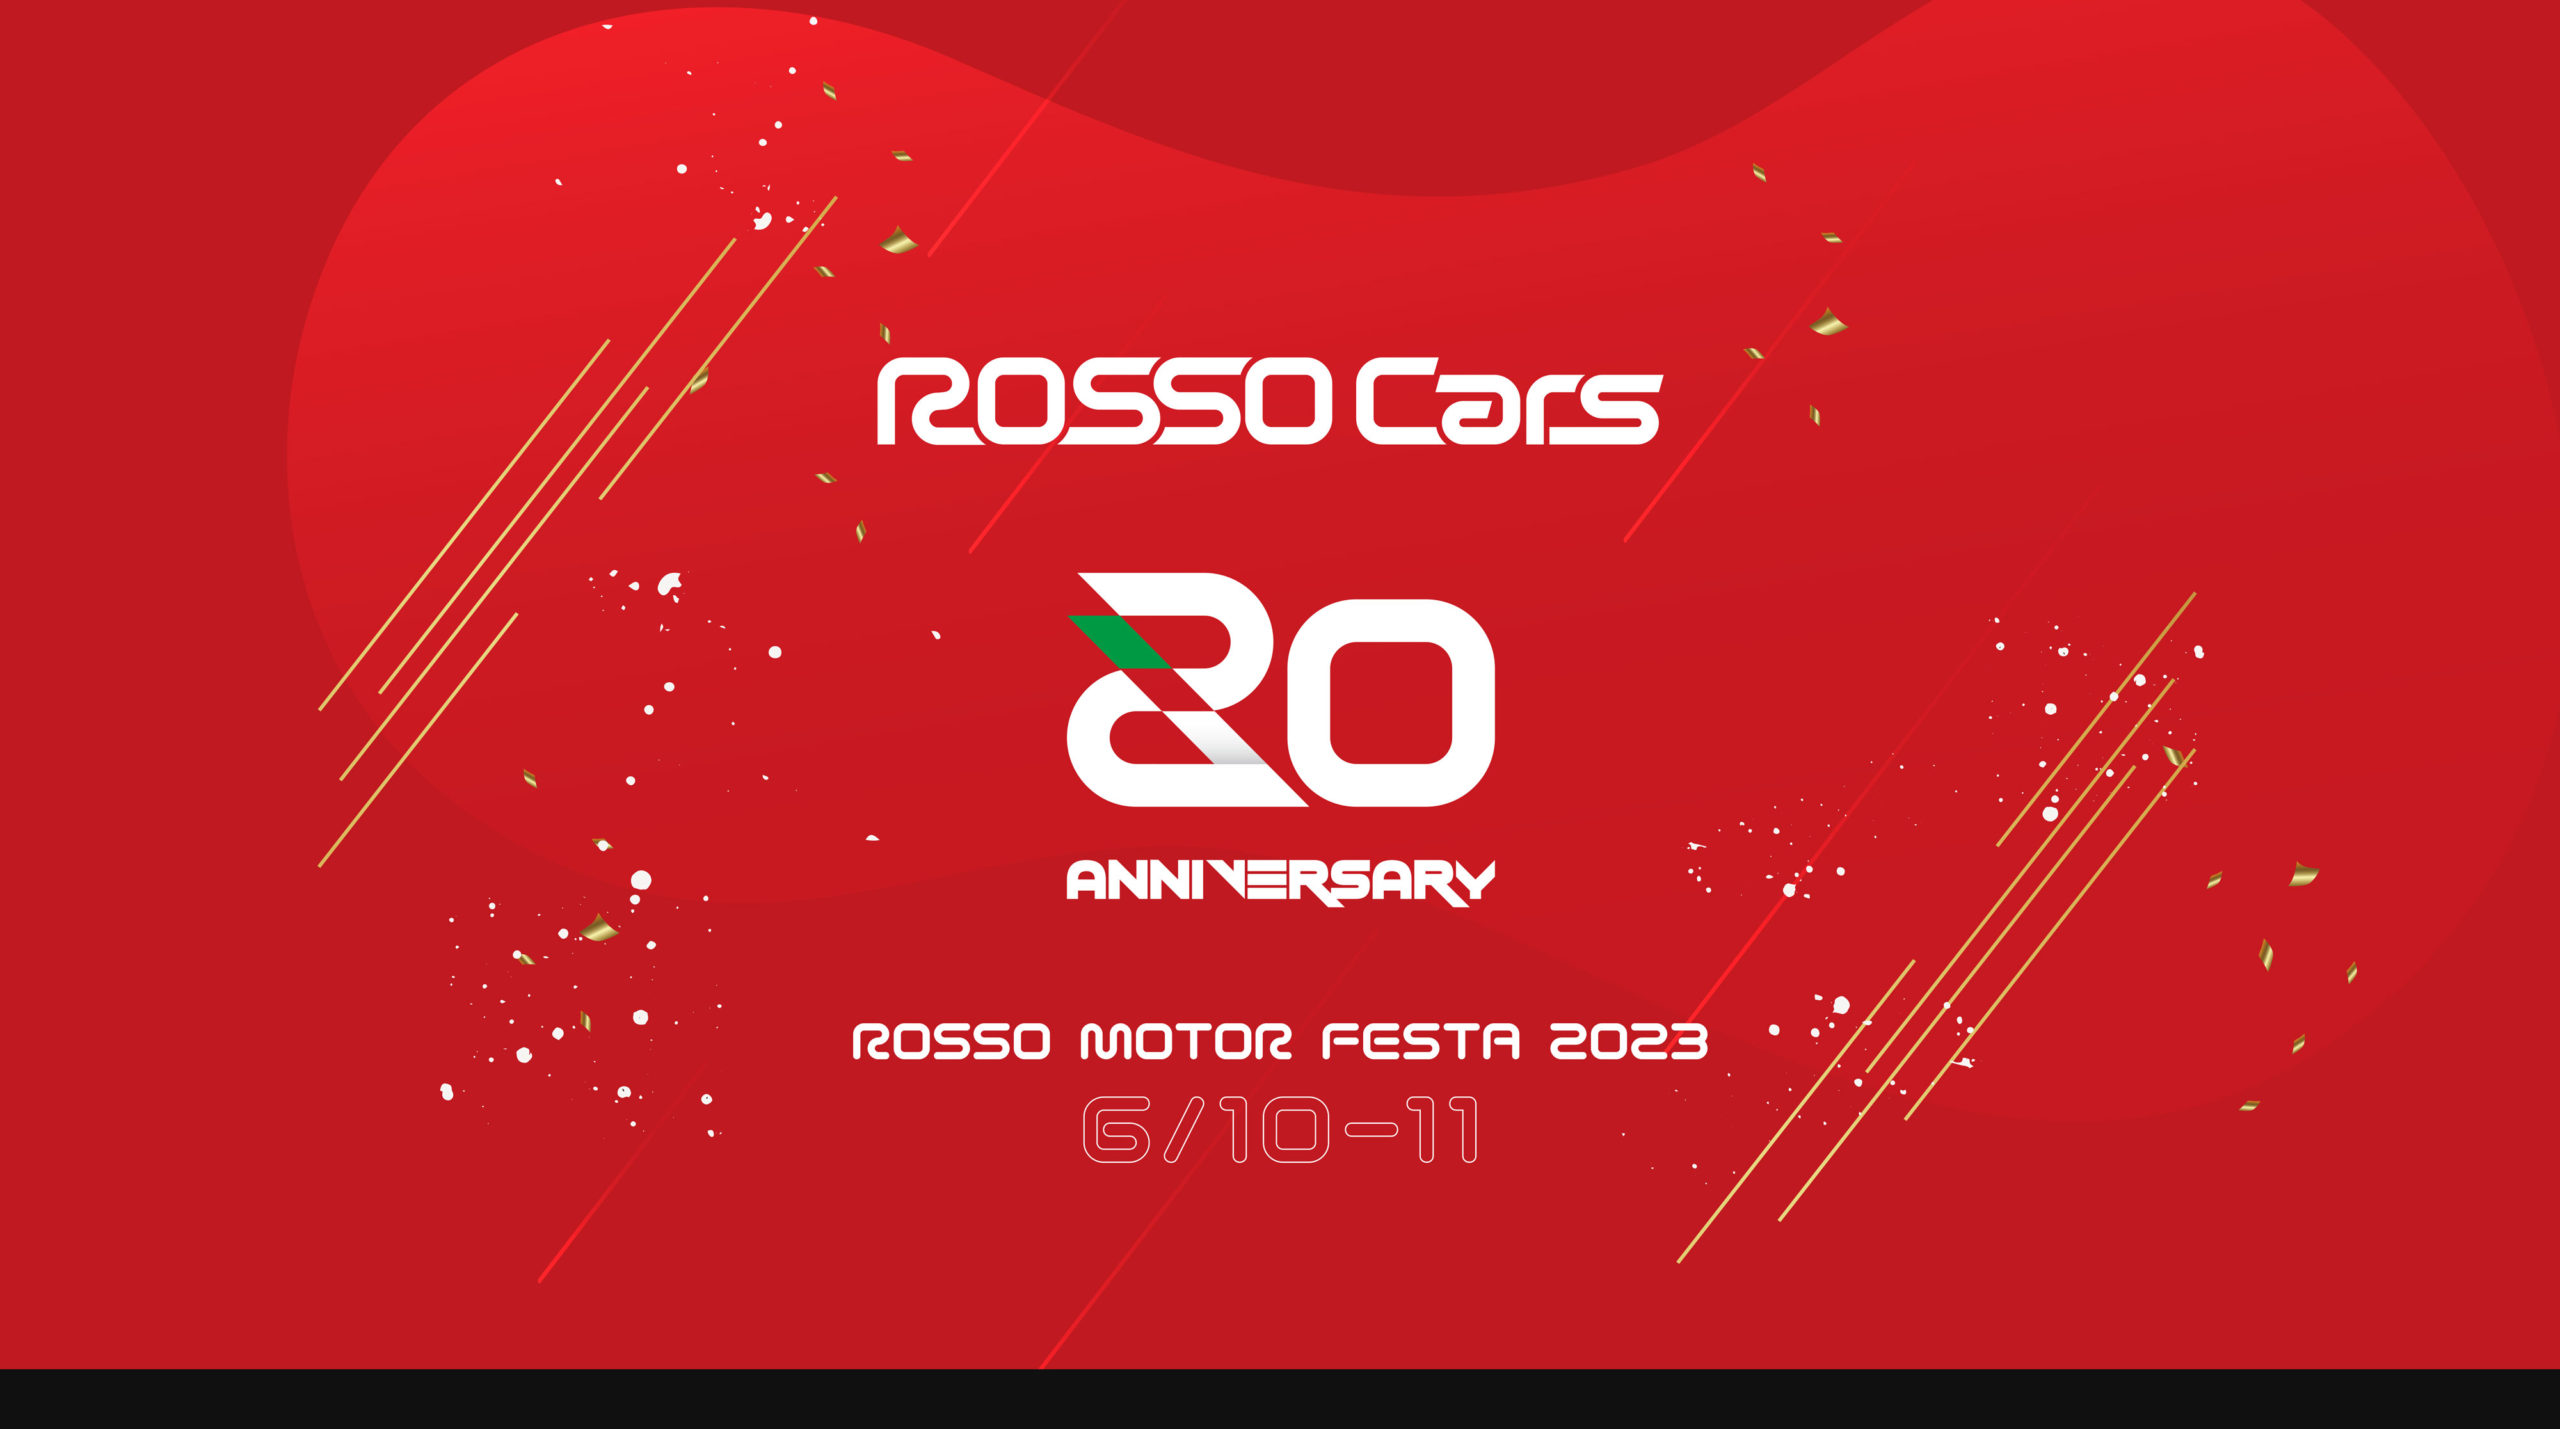 6/10（土）11（日）ROSSO MOTOR FESTA 2023開催！